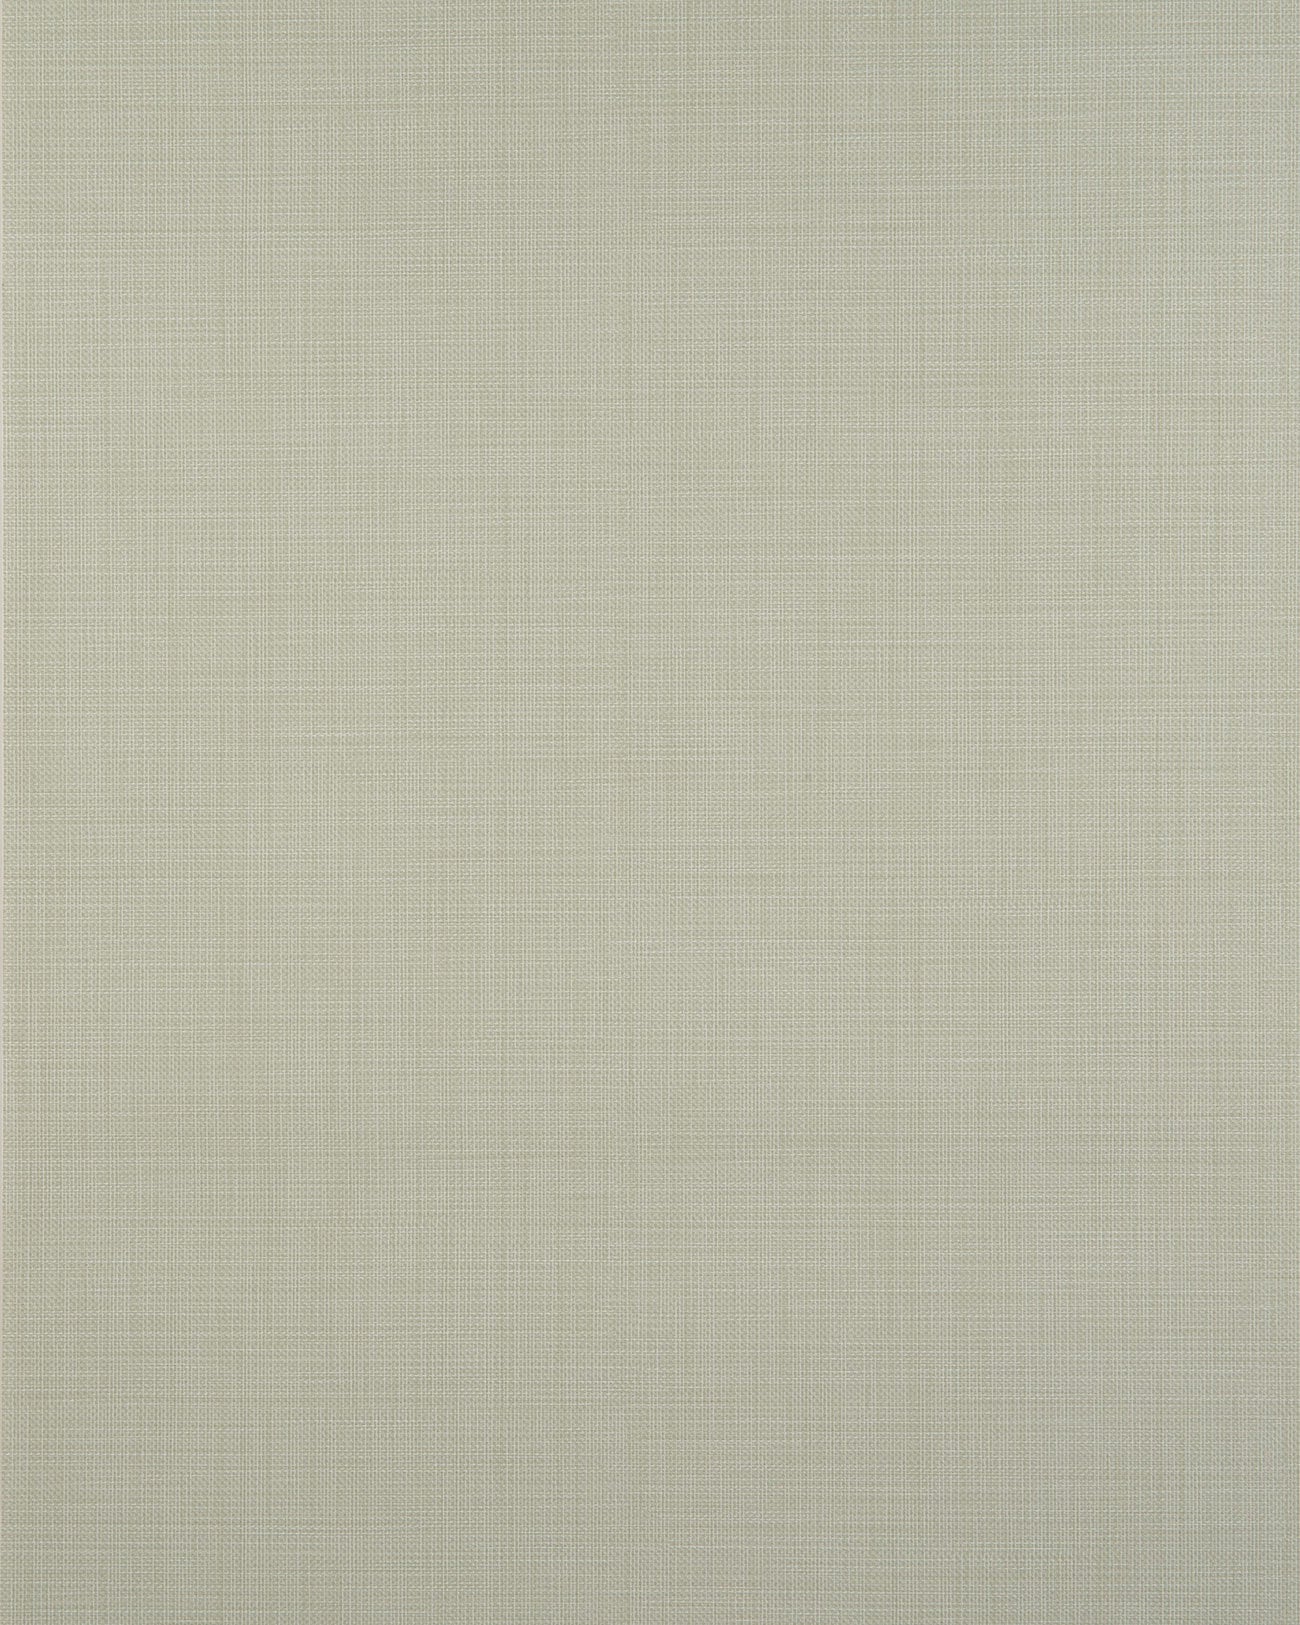 Profhome unicolor wallpaper BV919094-DI textured hot embossed non-woven wallpaper unicolor matte green 5.33 m2